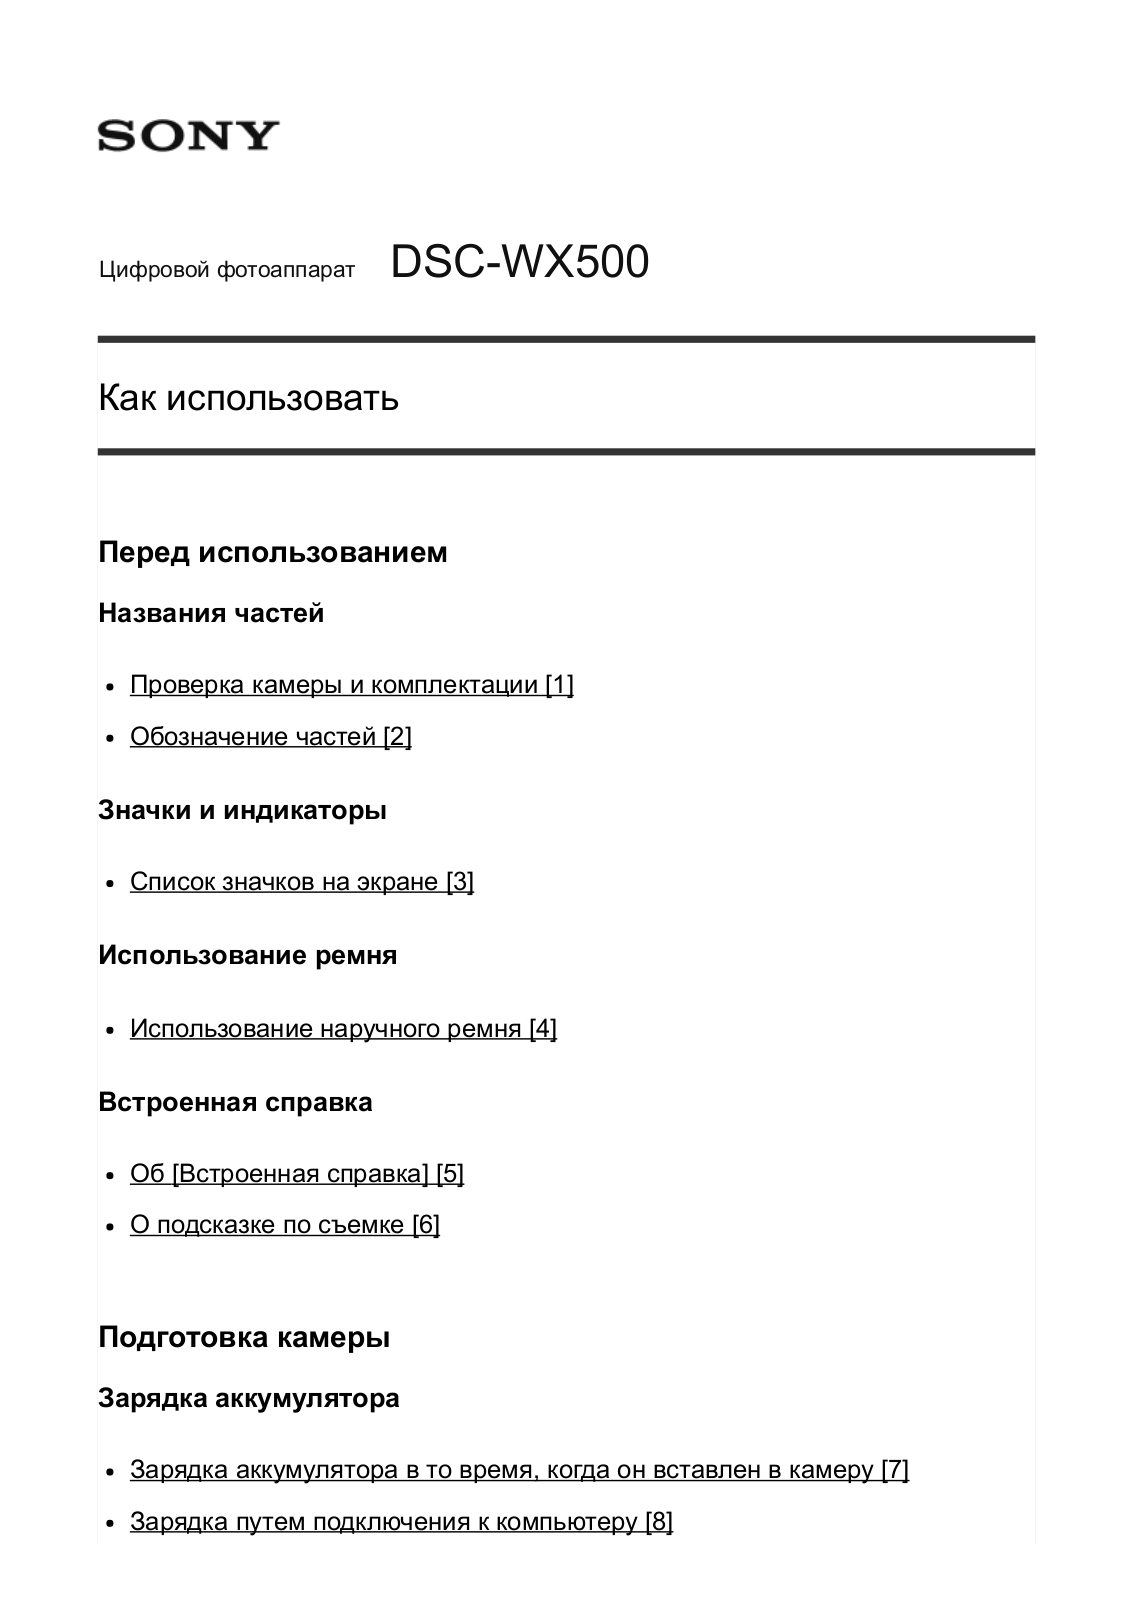 Sony DSC-WX500 User Manual